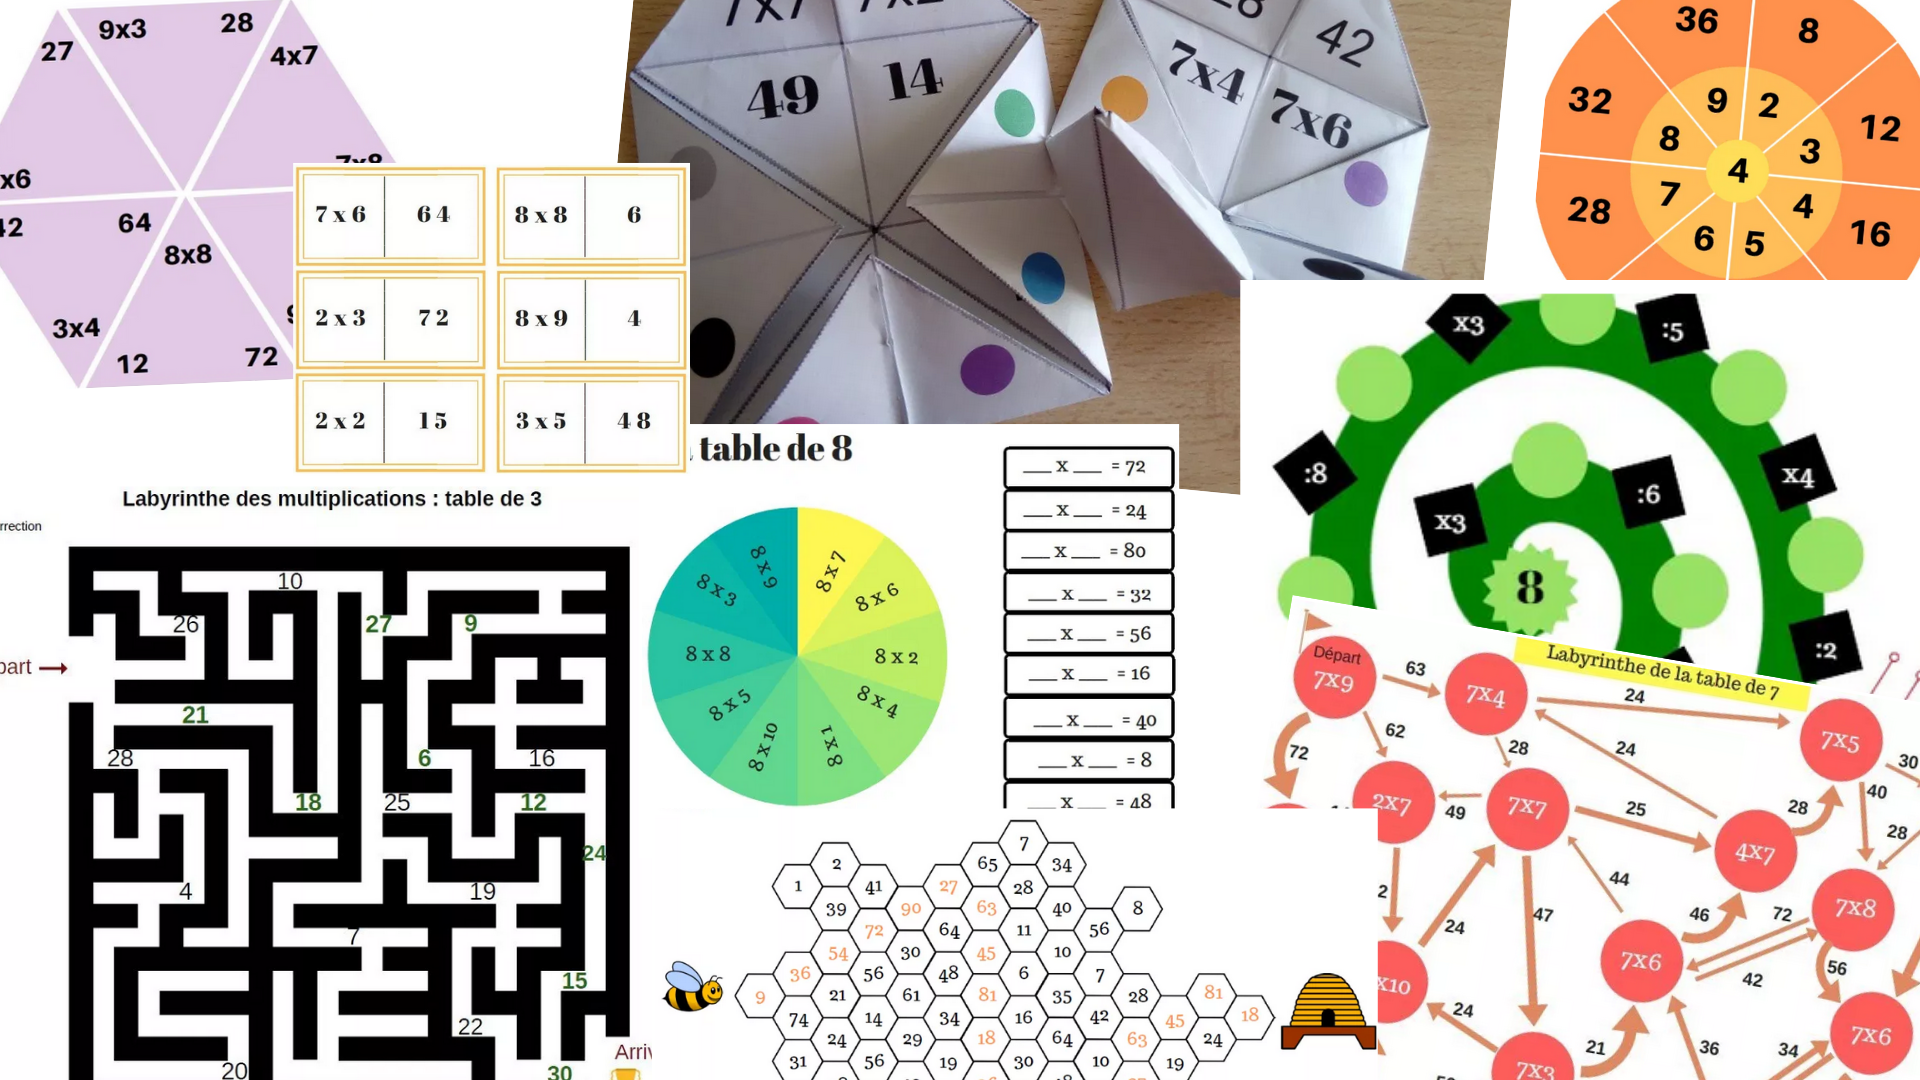 20 jeux gratuits pour réviser les tables de multiplication (dominos,  labyrinthes, jeux de cartes, cocottes, mistigri) - Apprendre, réviser,  mémoriser